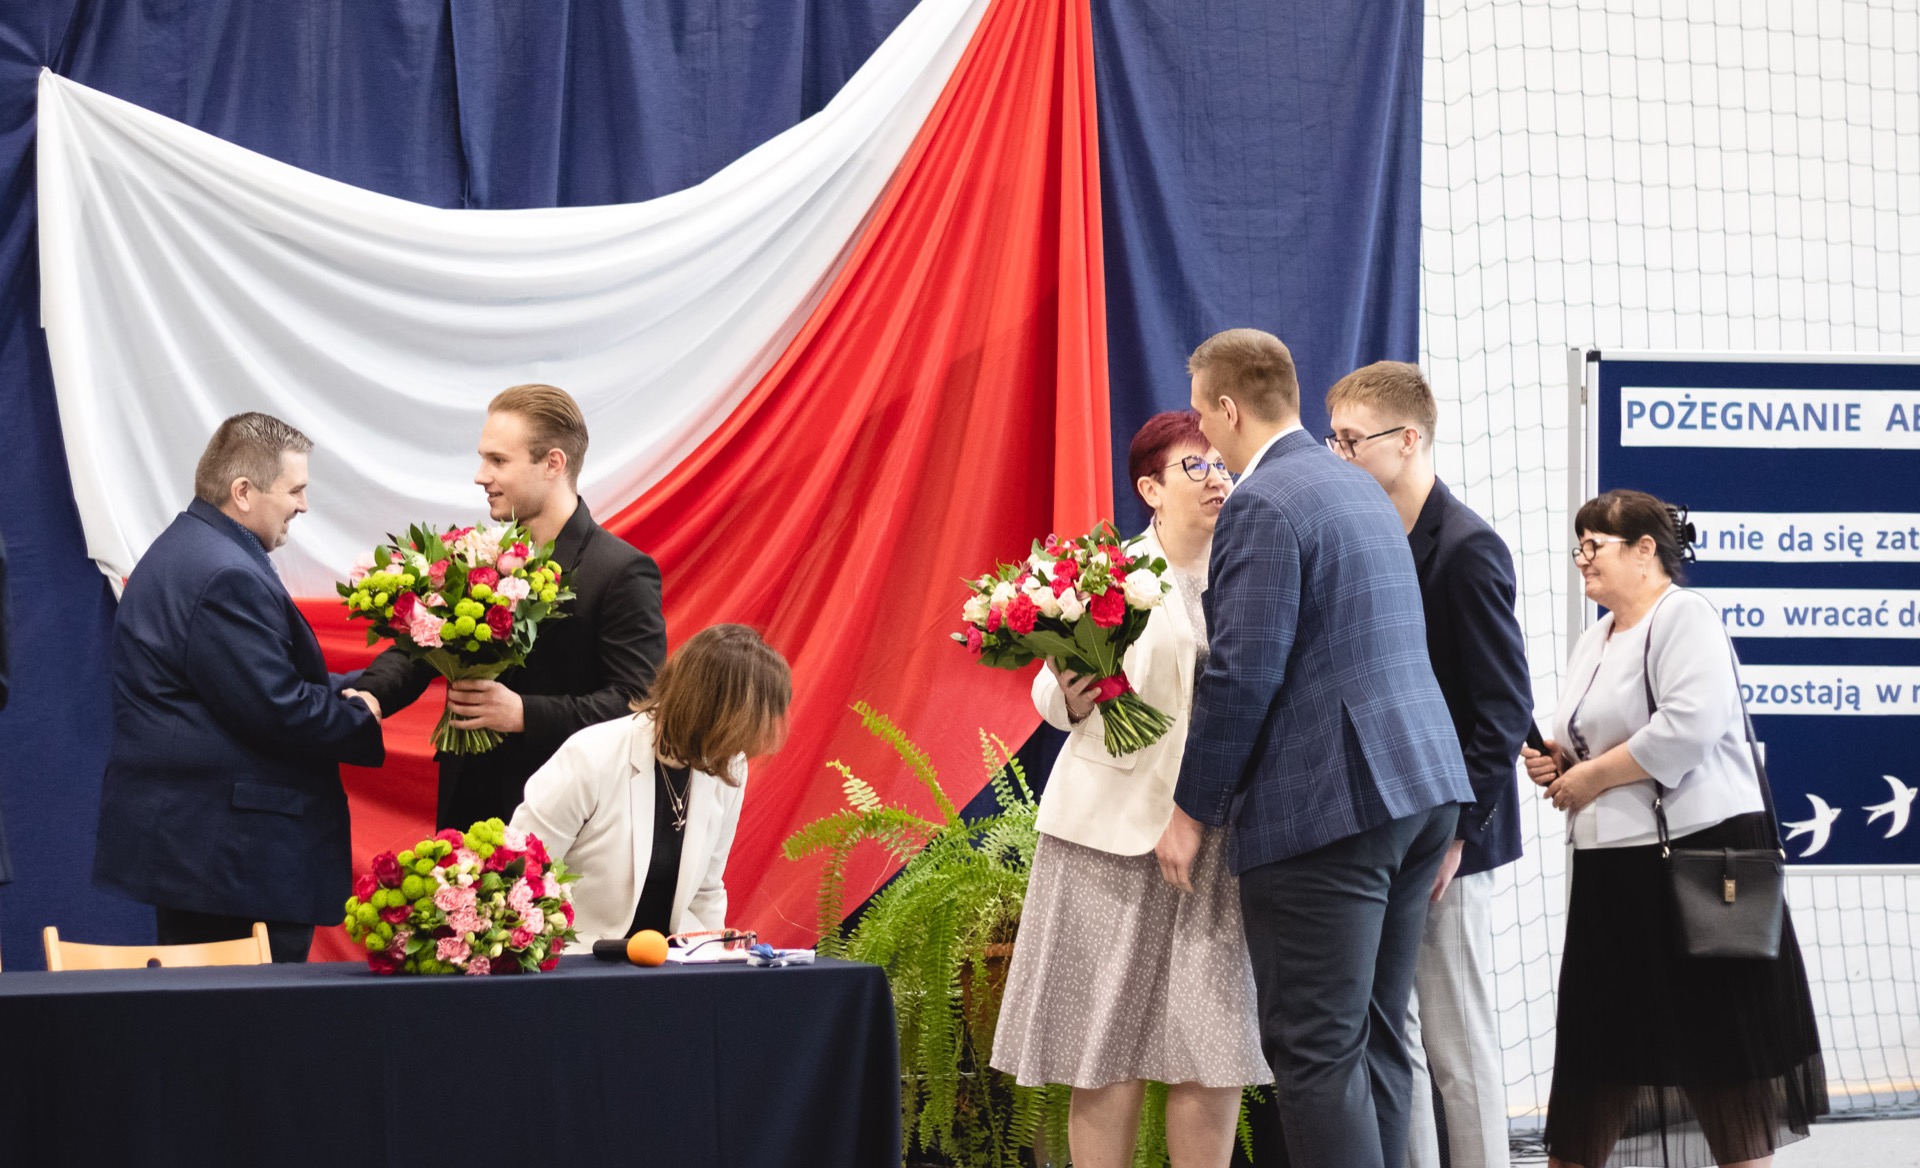 Absolwenci wręczają bukiety kwiatów dyrekcji oraz wychowawcom. W tle dekoracja biało-czerwona flaga na granatowym tle.